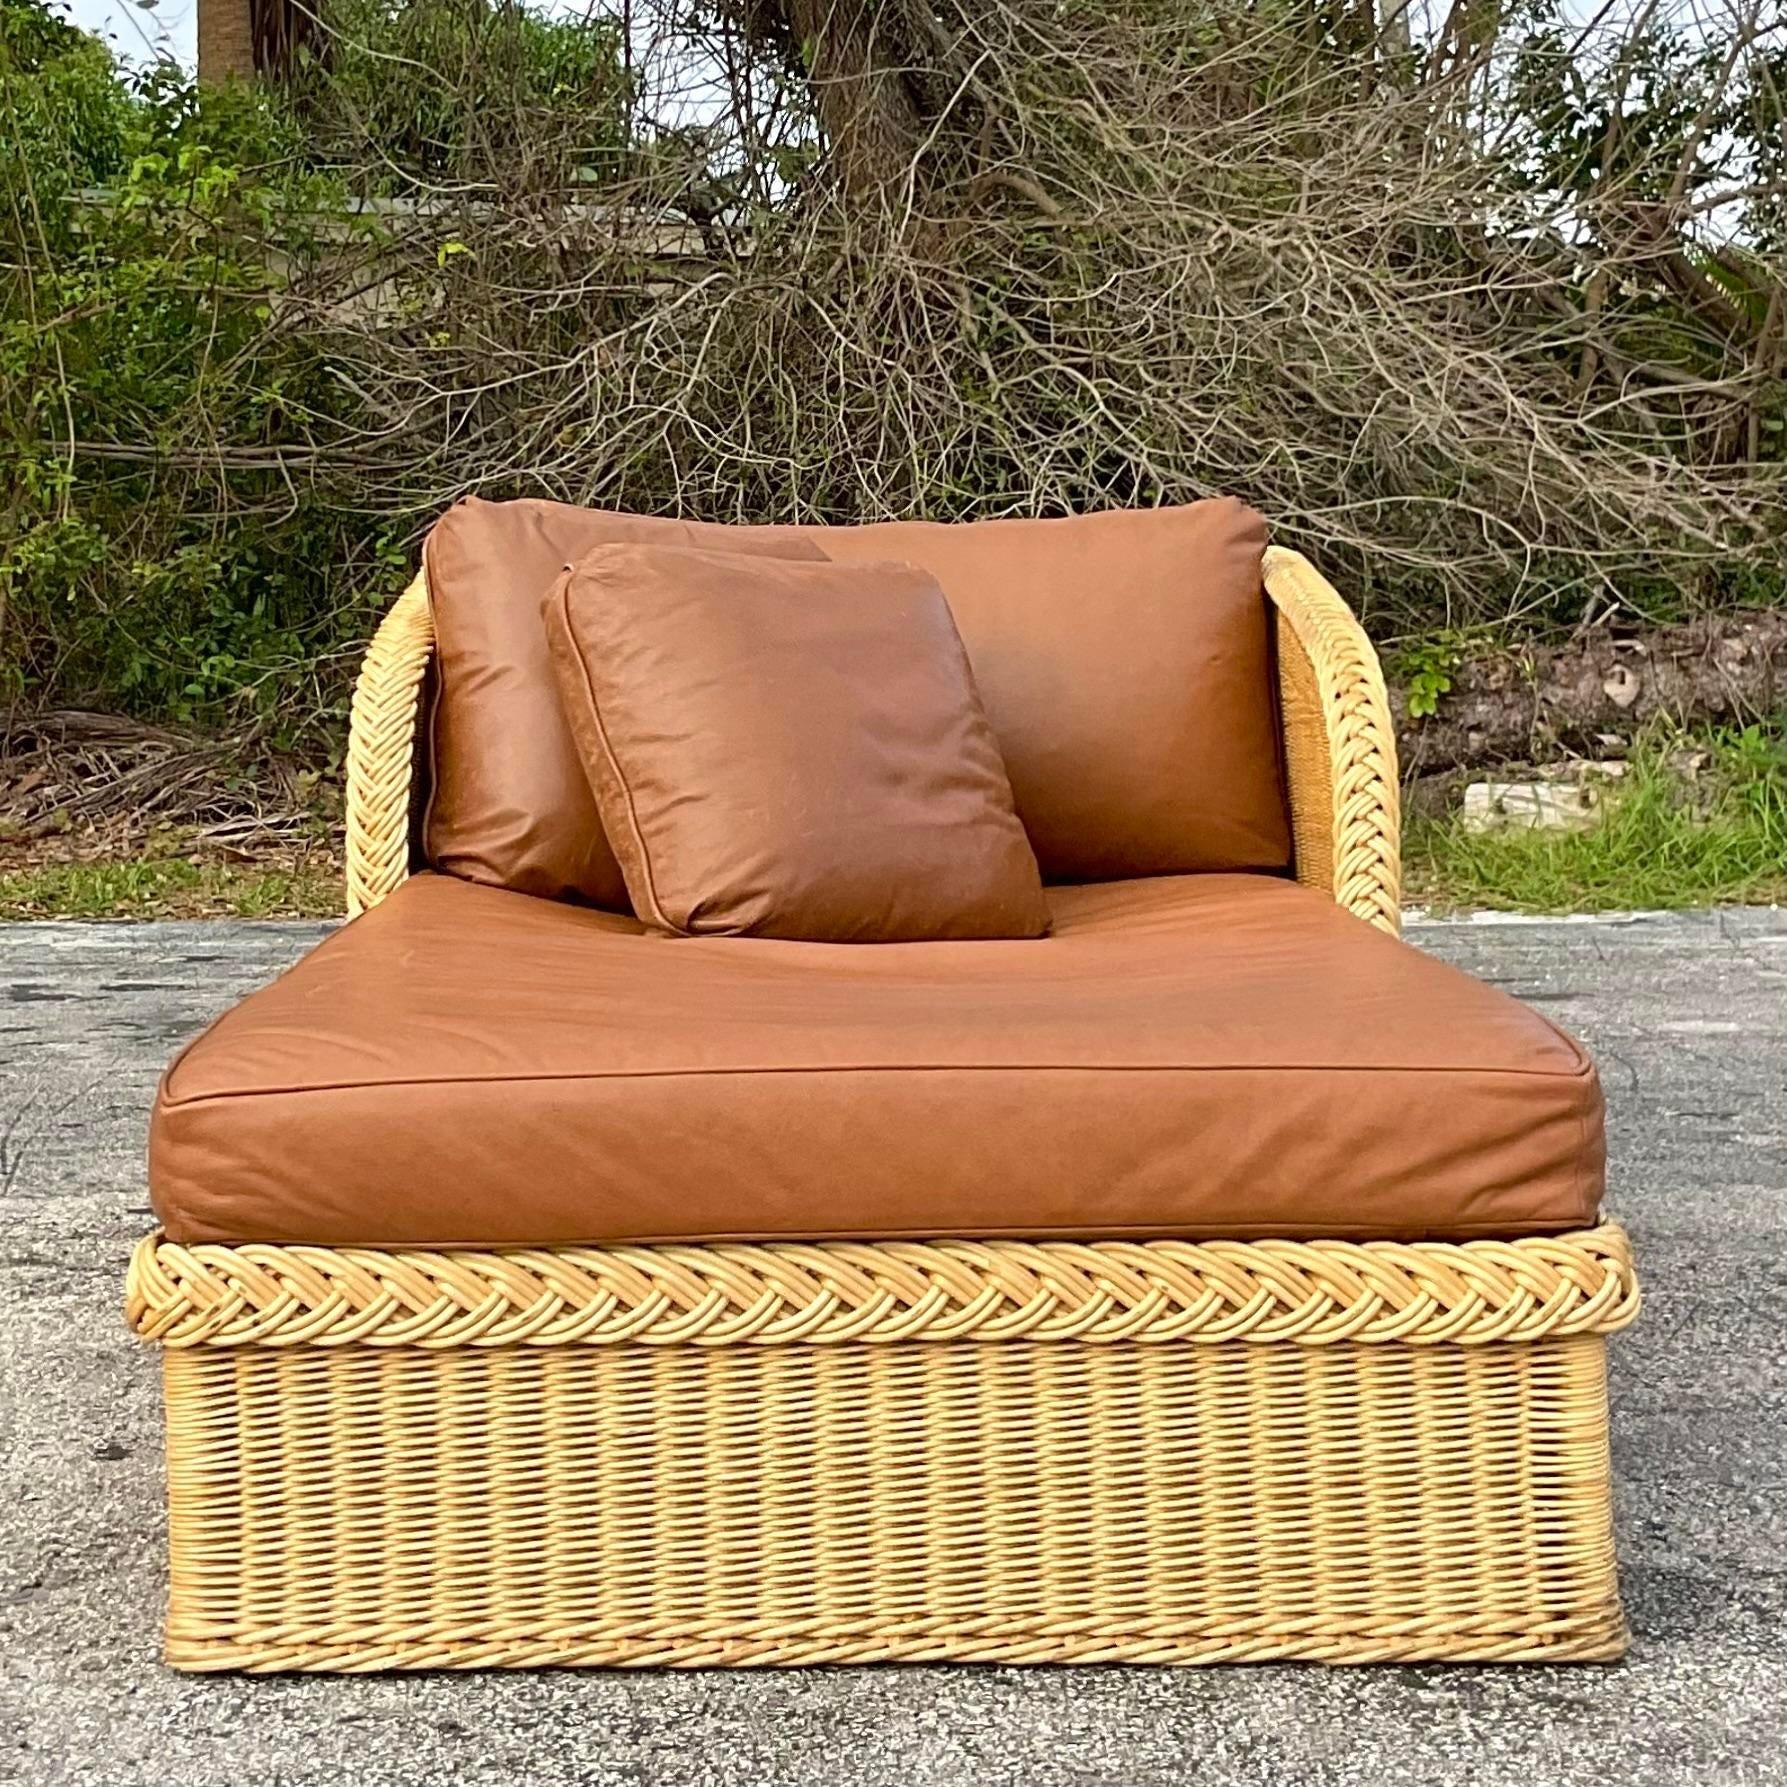 Une incroyable chaise longue Coastal vintage. Fabriqué par les emblématiques frères Bielecky et étiqueté sous le coussin. Un fantastique coussin en cuir personnalisé avec des coussins coordonnés. Acquis d'une propriété de Palm Beach. 